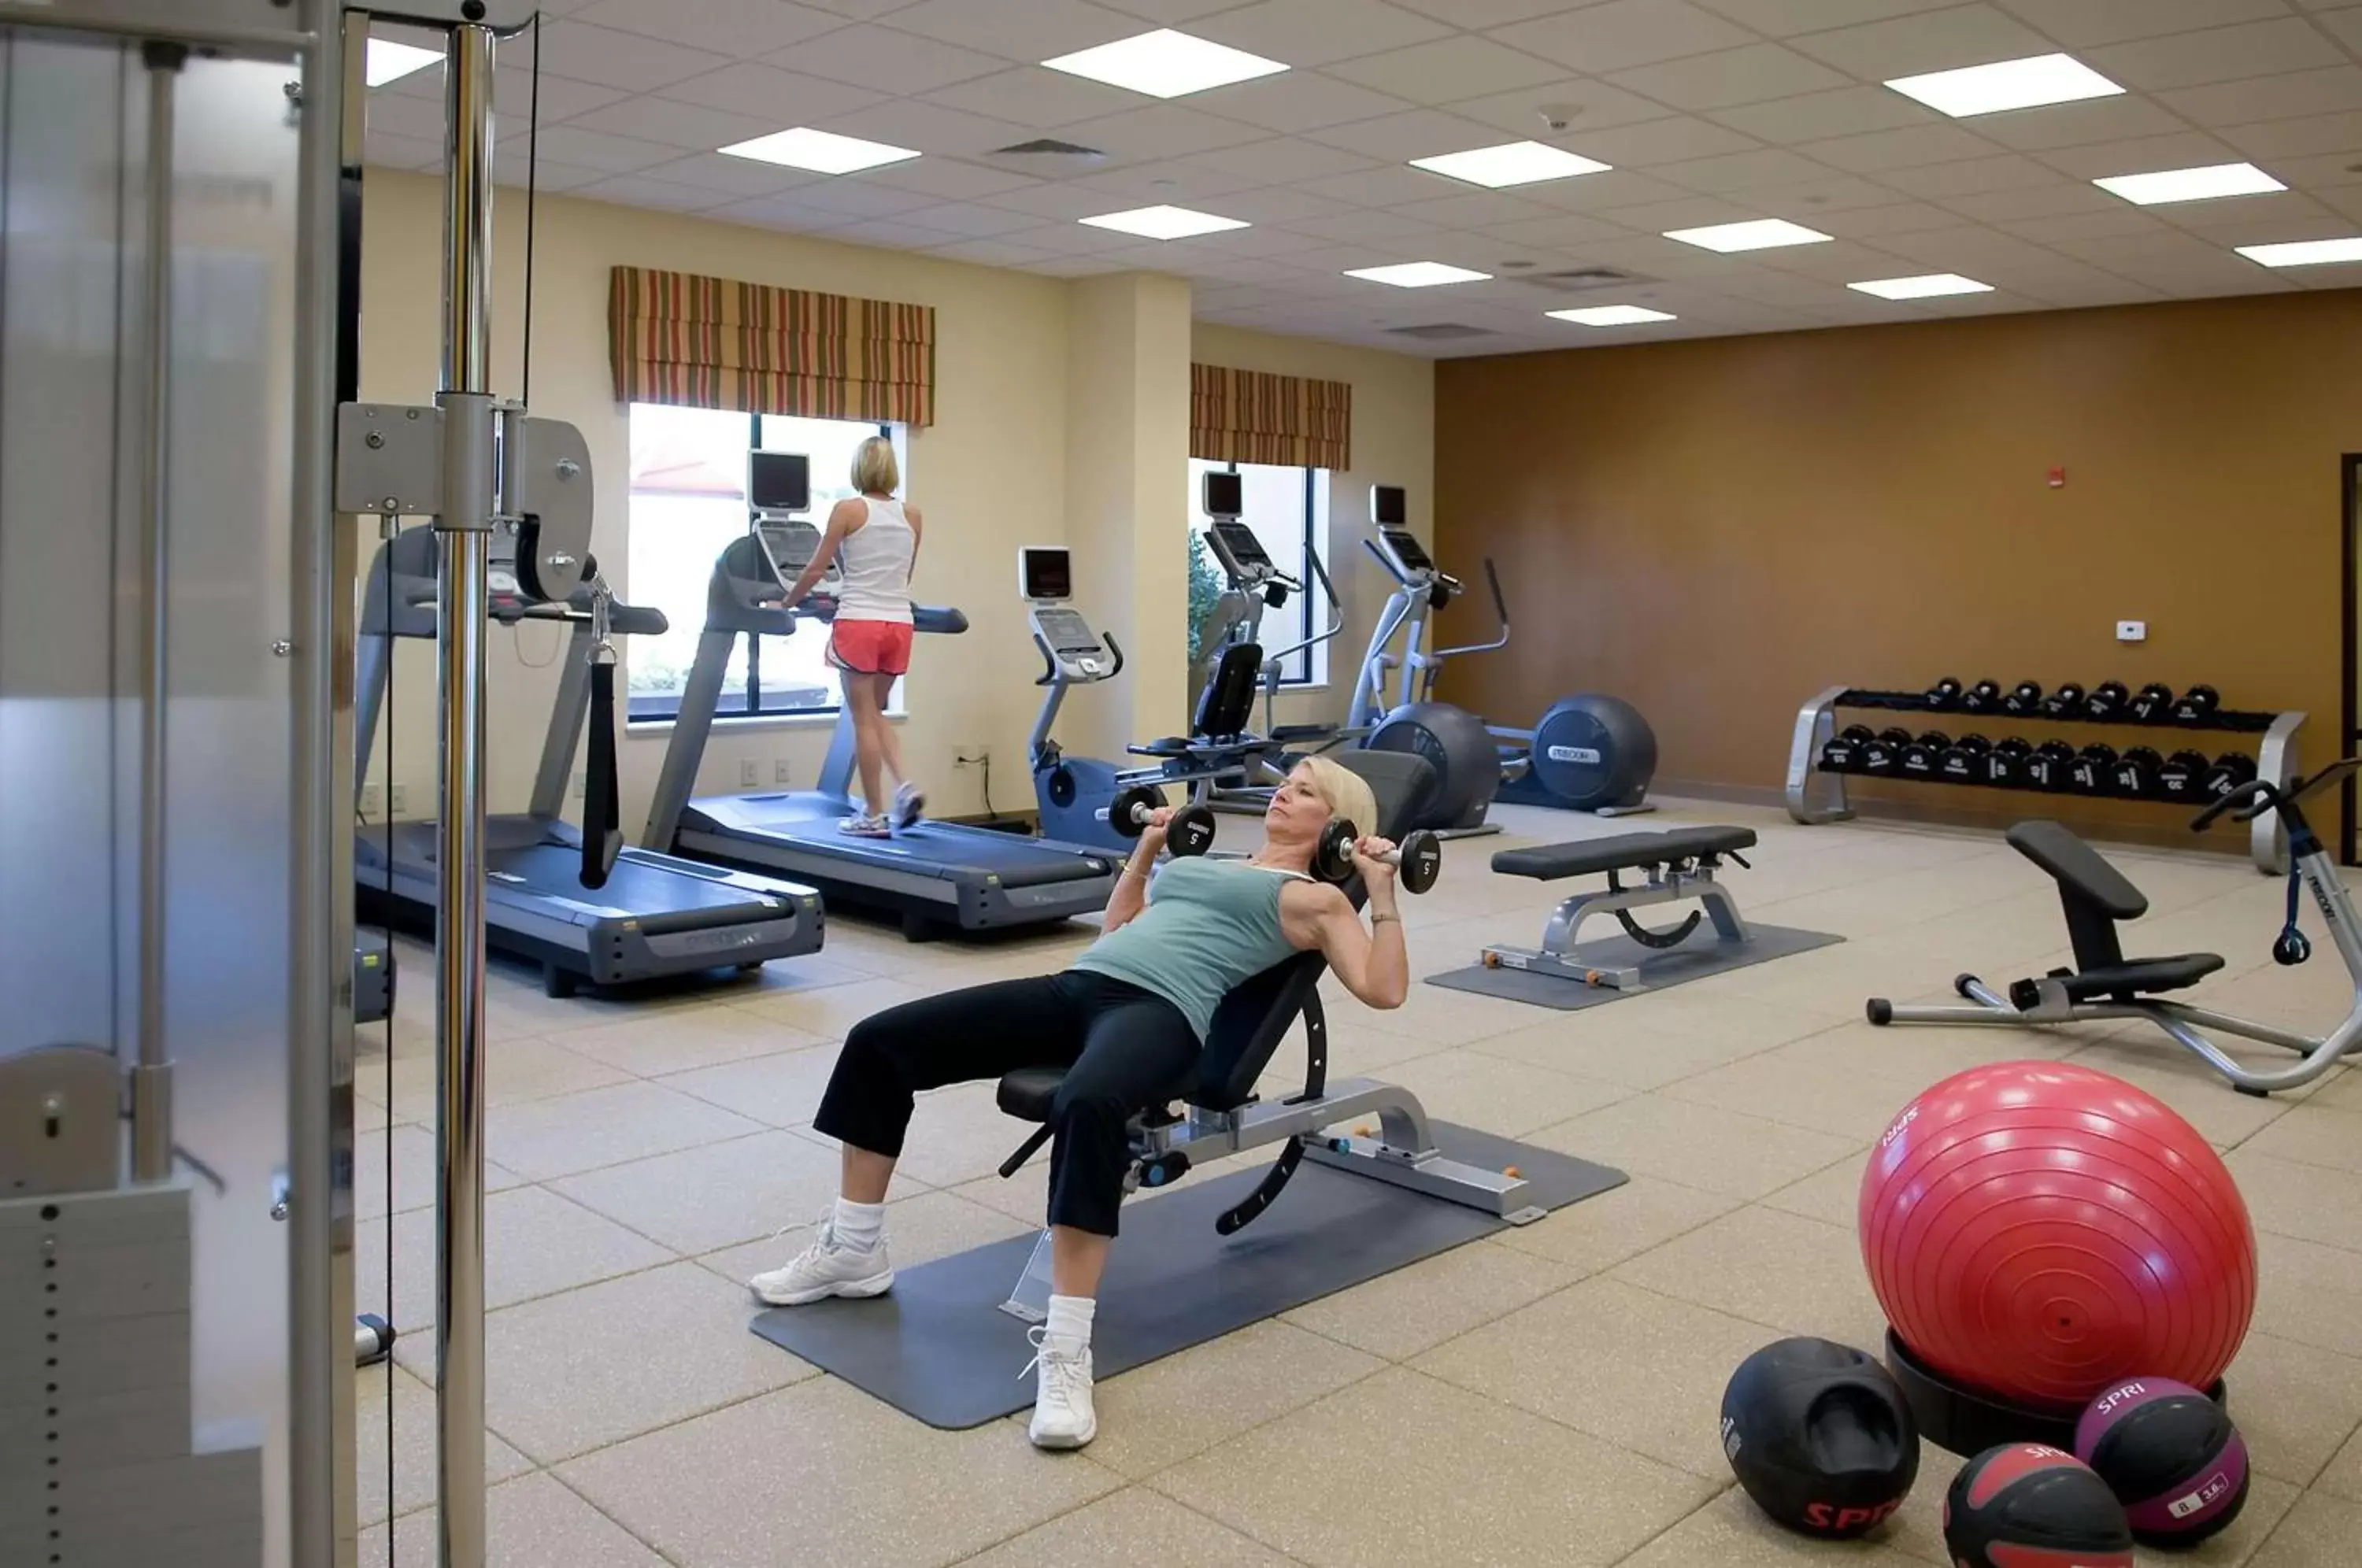 Fitness centre/facilities, Fitness Center/Facilities in Hilton Garden Inn Pensacola Airport/Medical Center